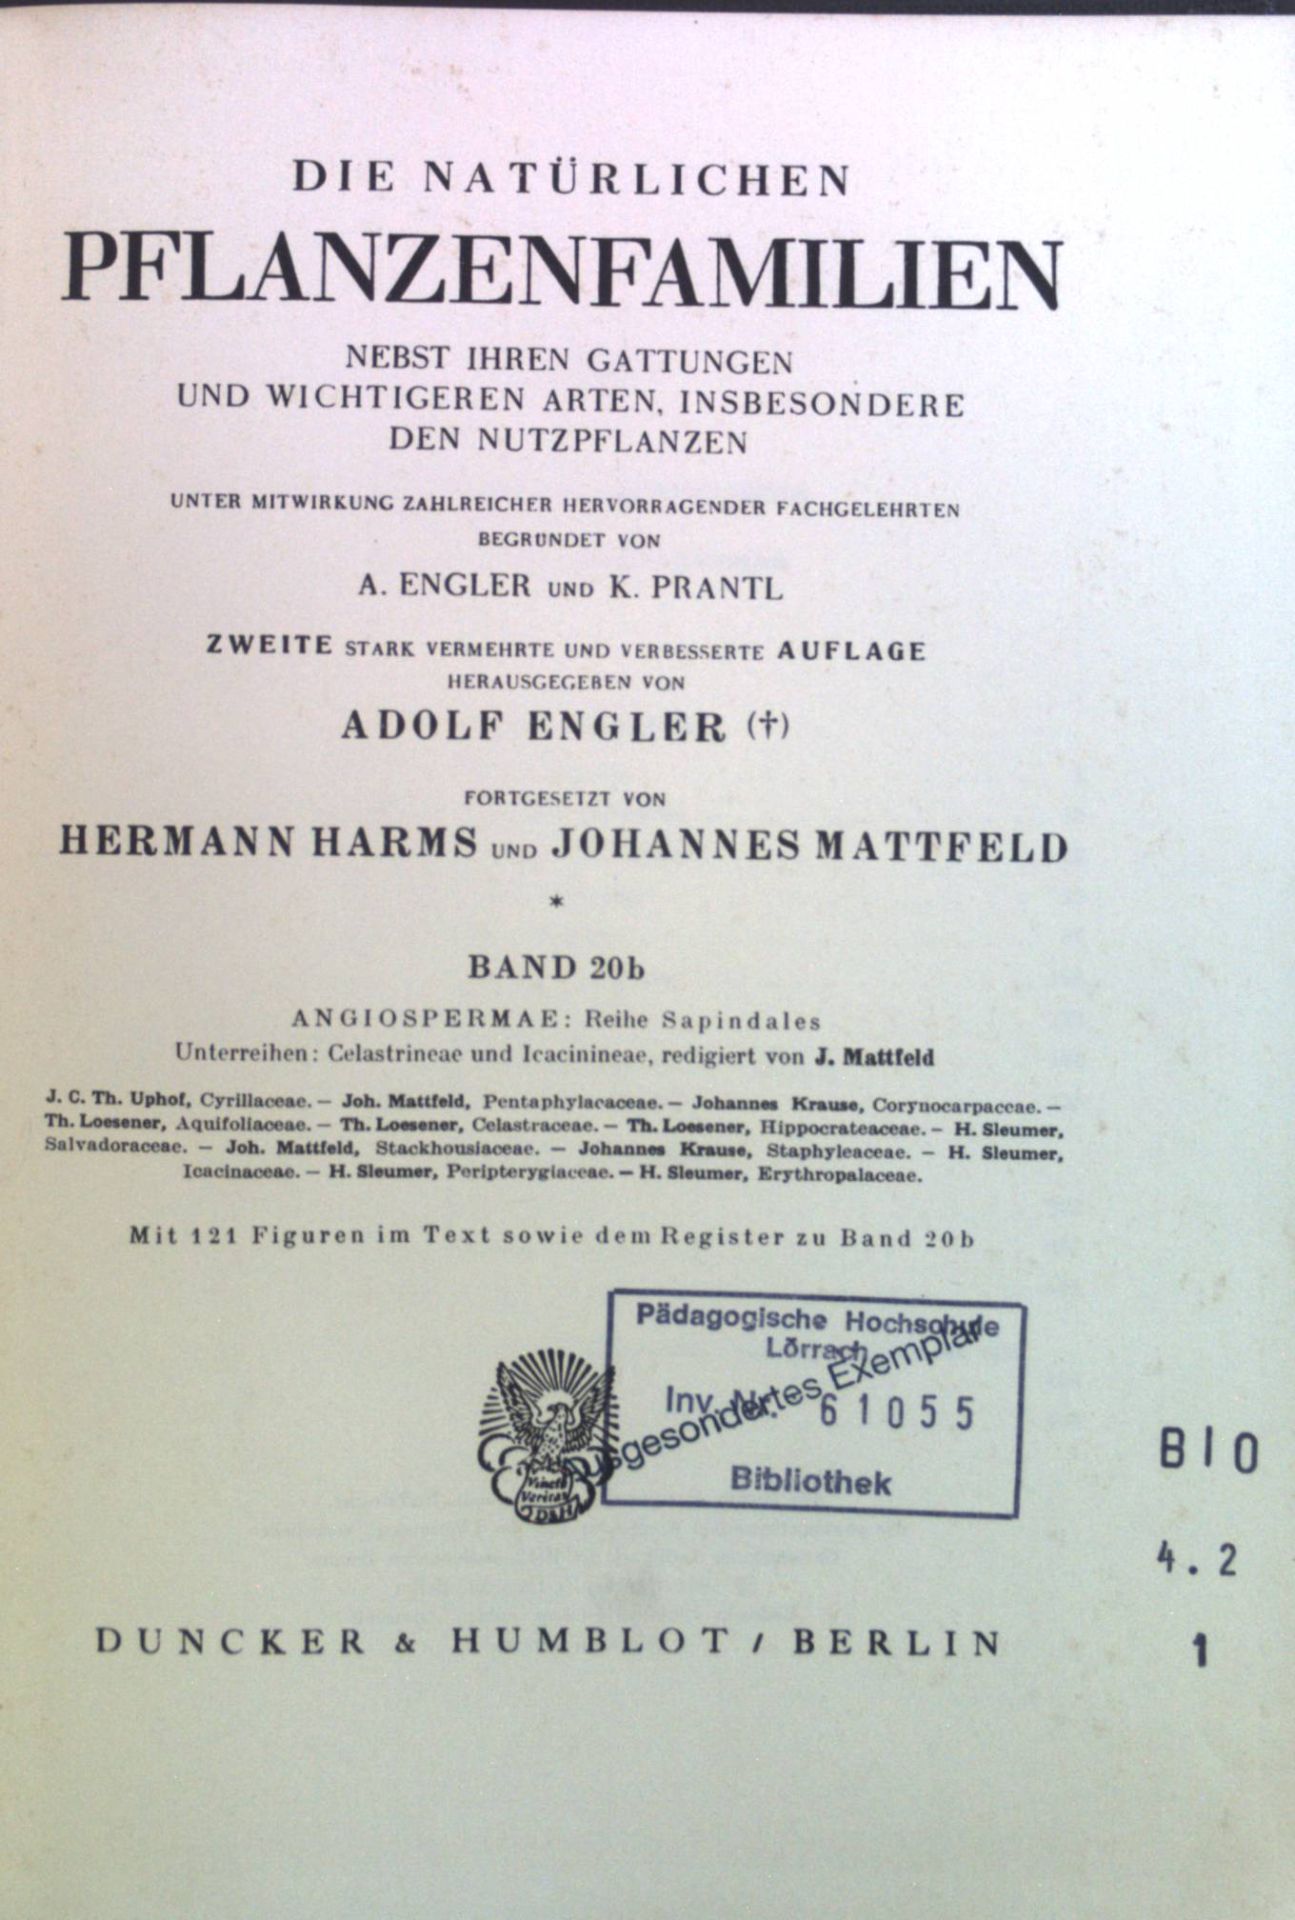 Die natürlichen Pflanzenfamilien nebst ihren Gattungen und wichtigsten Arten, insbesondere den Nutzpflanzen. Bd. 20b. - Engler, Adolf, Hermann Harms Johannes Mattfeld u. a.